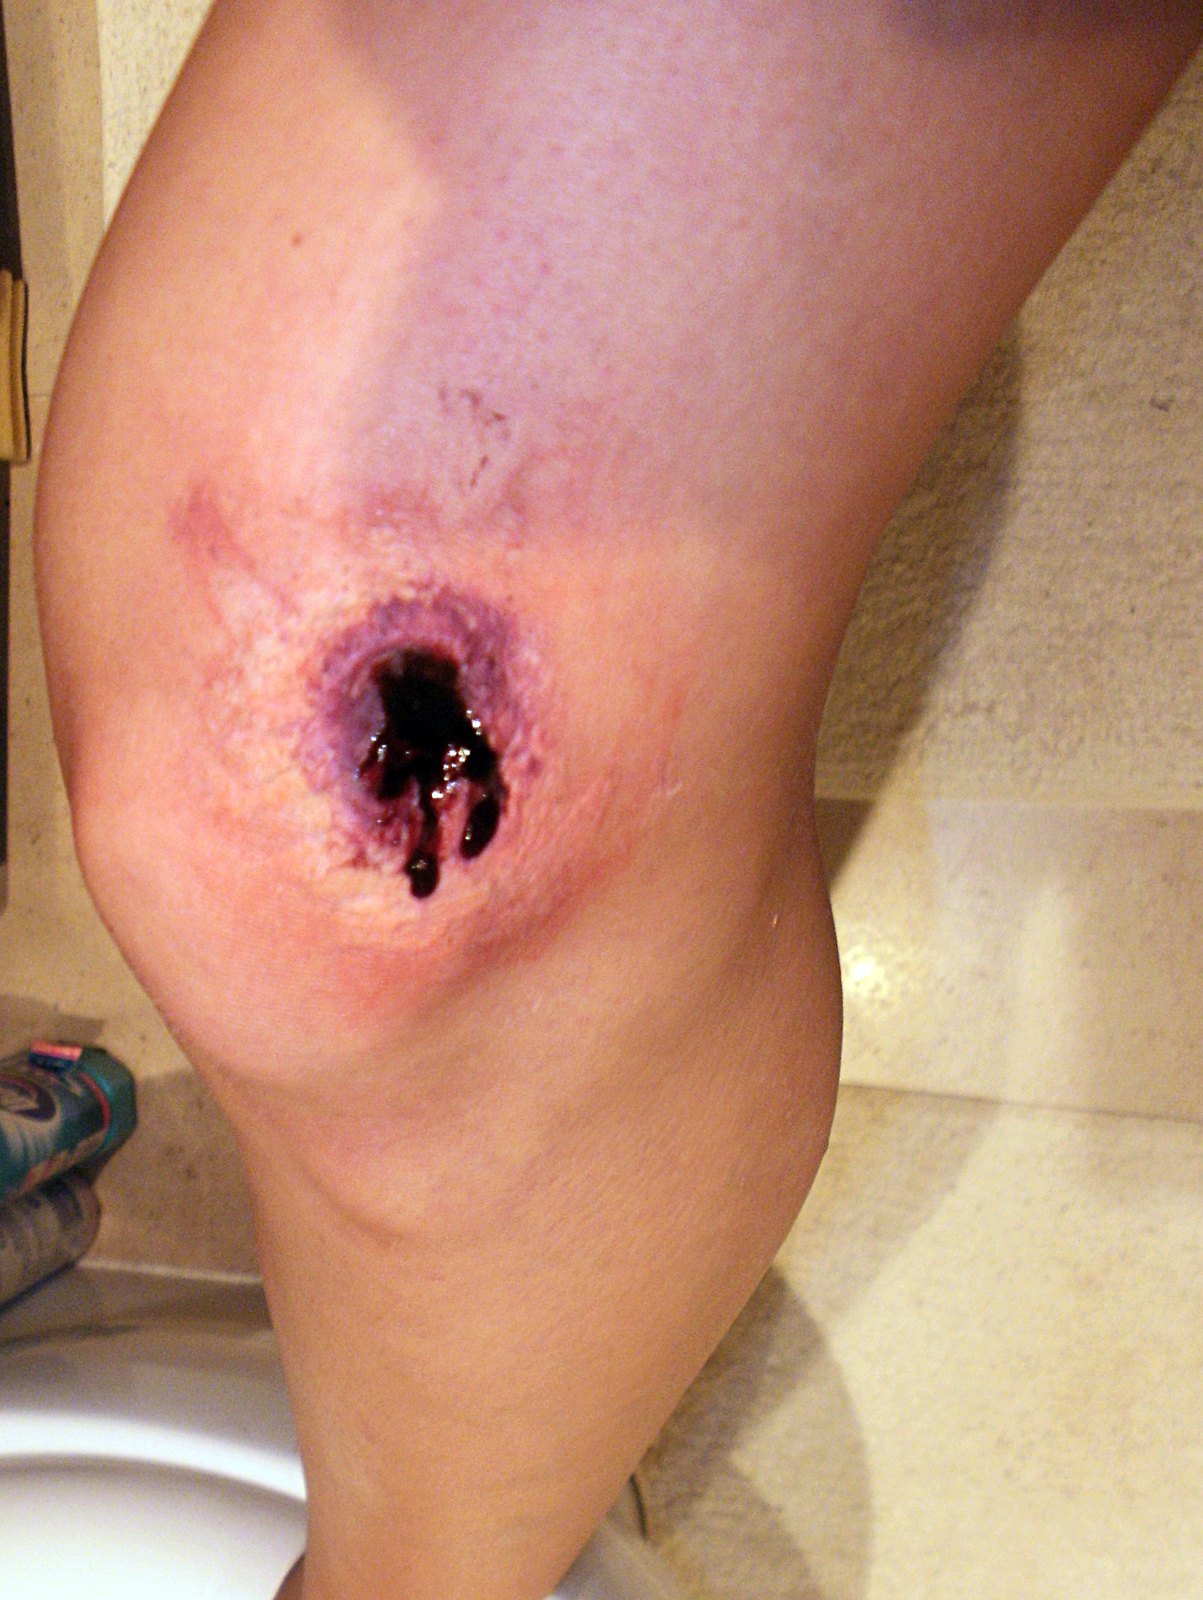 Zdjęcie numer cztery przedstawia ranę postrzałową. Zbliżenie na kolano prawej nogi poszkodowanego. Na wewnętrznej stronie nogi, powyżej kolana, fioletowa owalna dziura po kuli średnicy około 3 centymetrów. Z rany sączy się powoli ciemna krew. Na kolanie widoczny obrzęk.